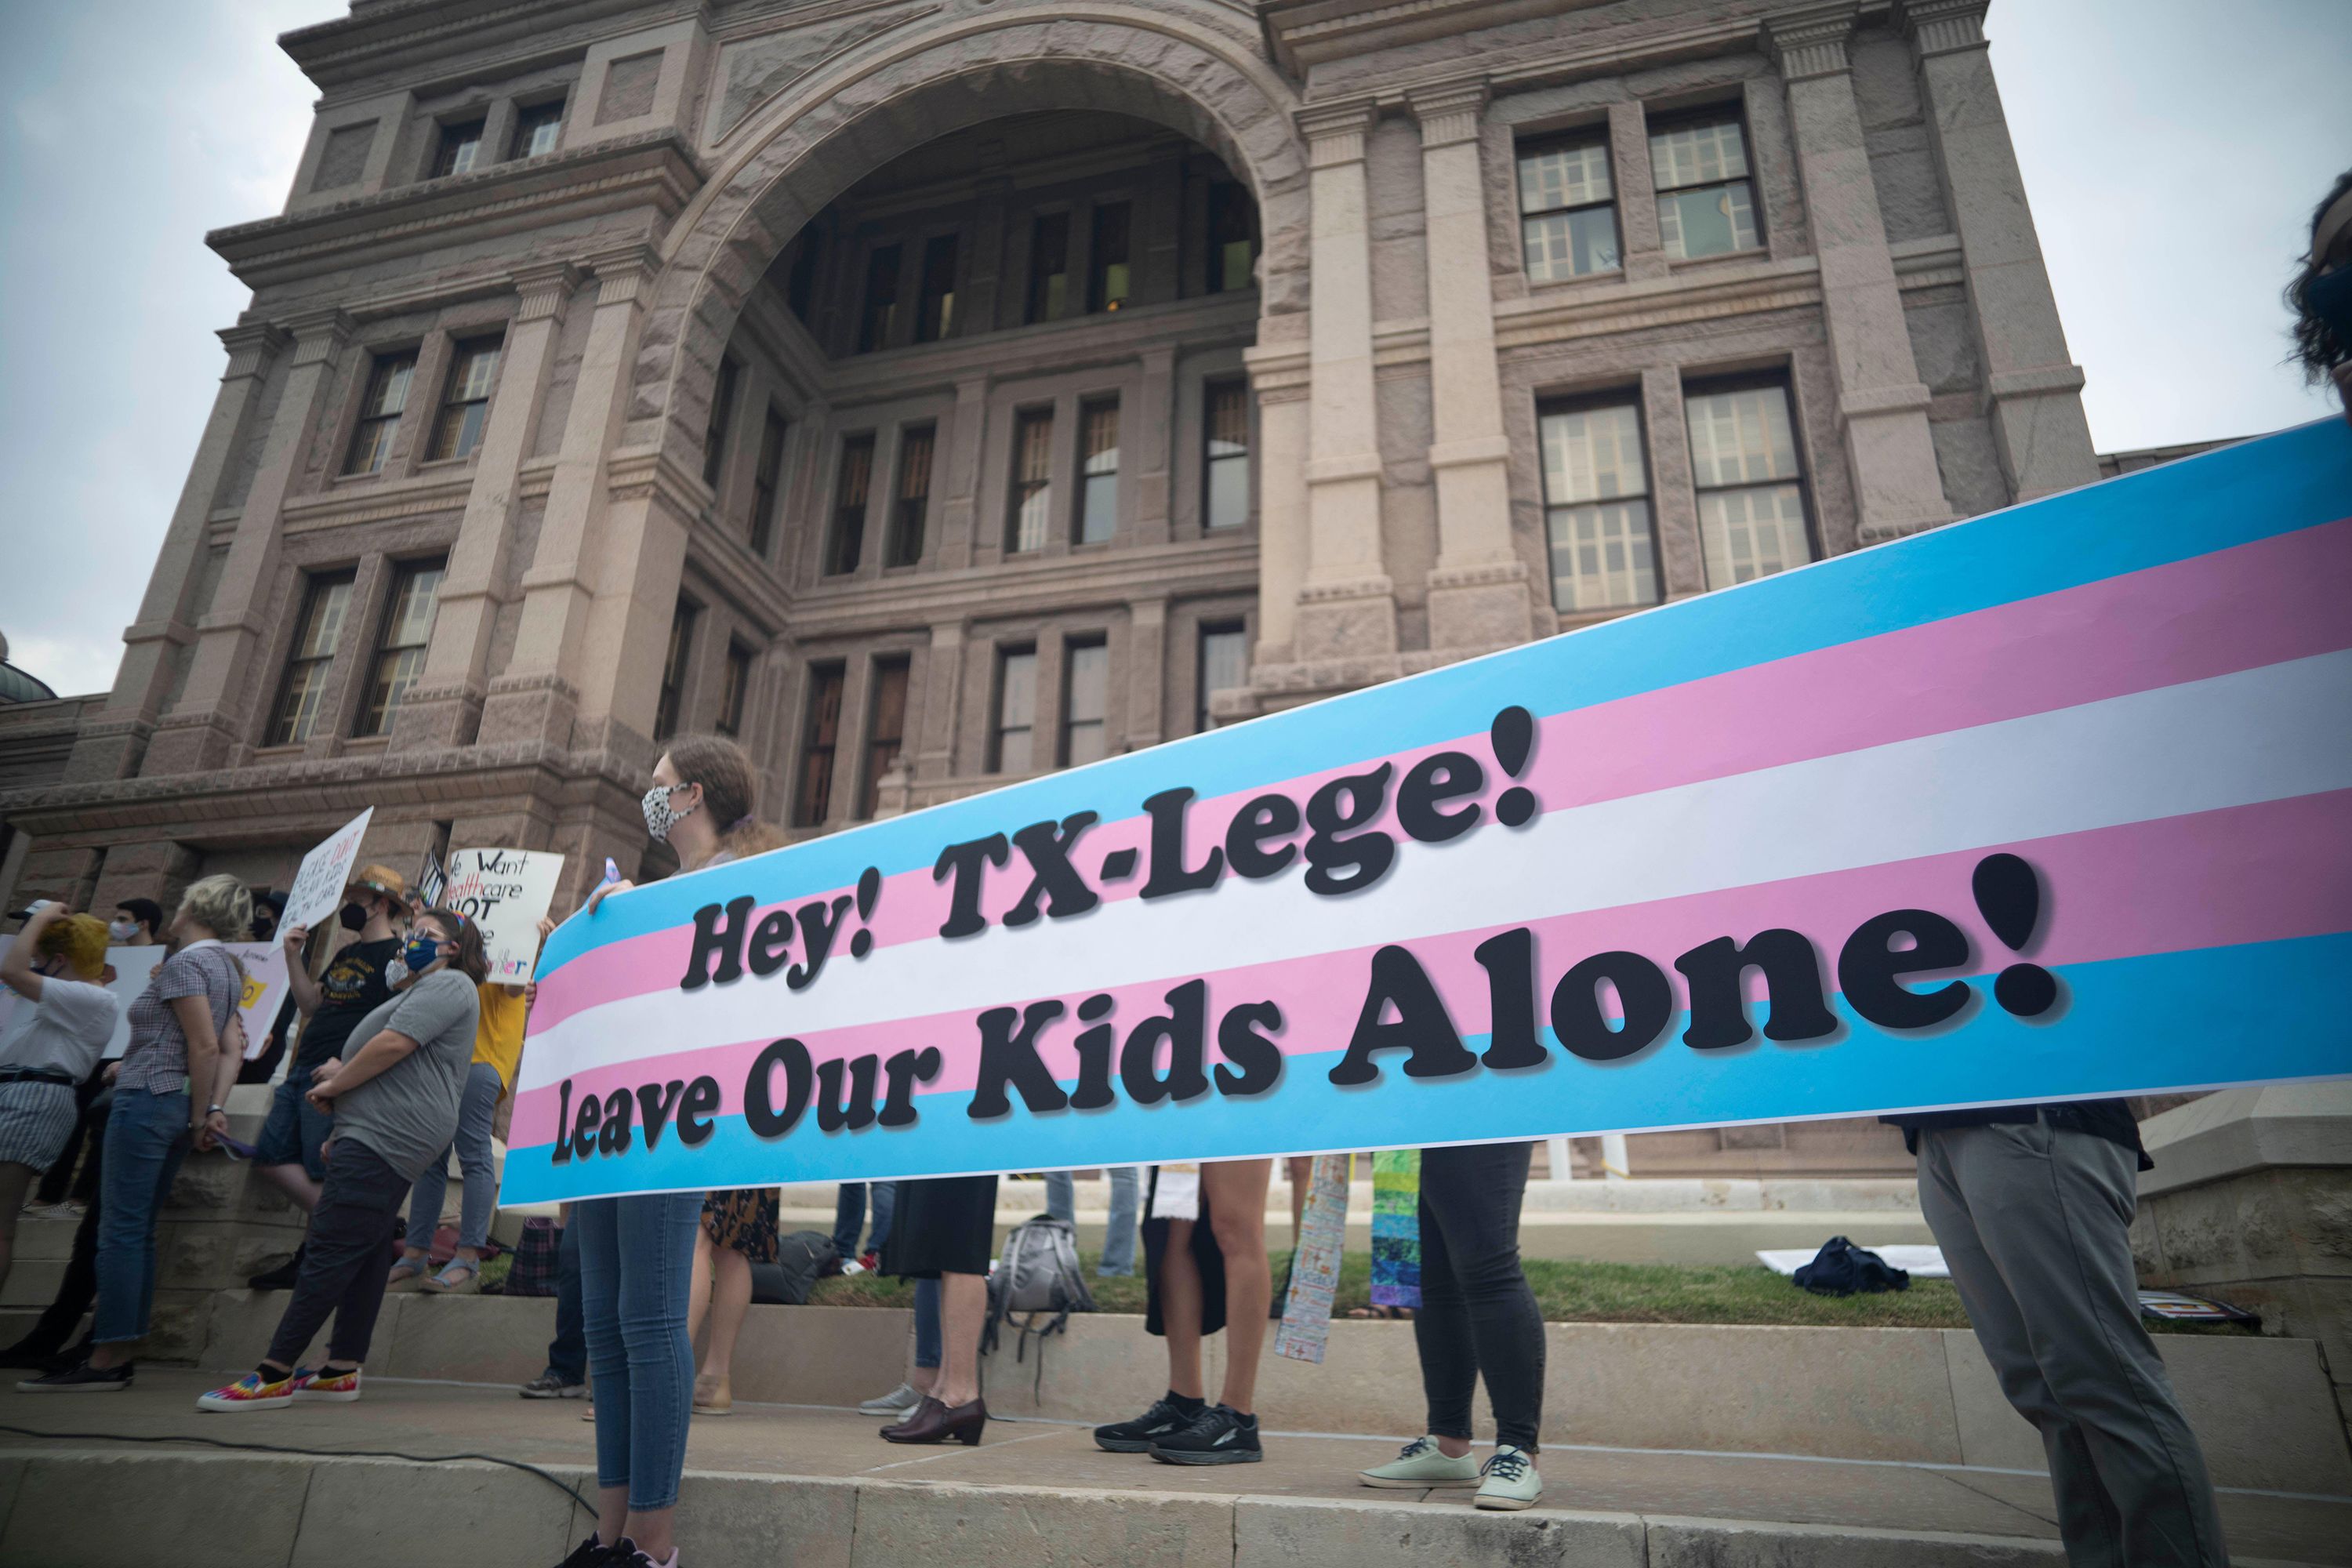 Strangers unite over their transgender children